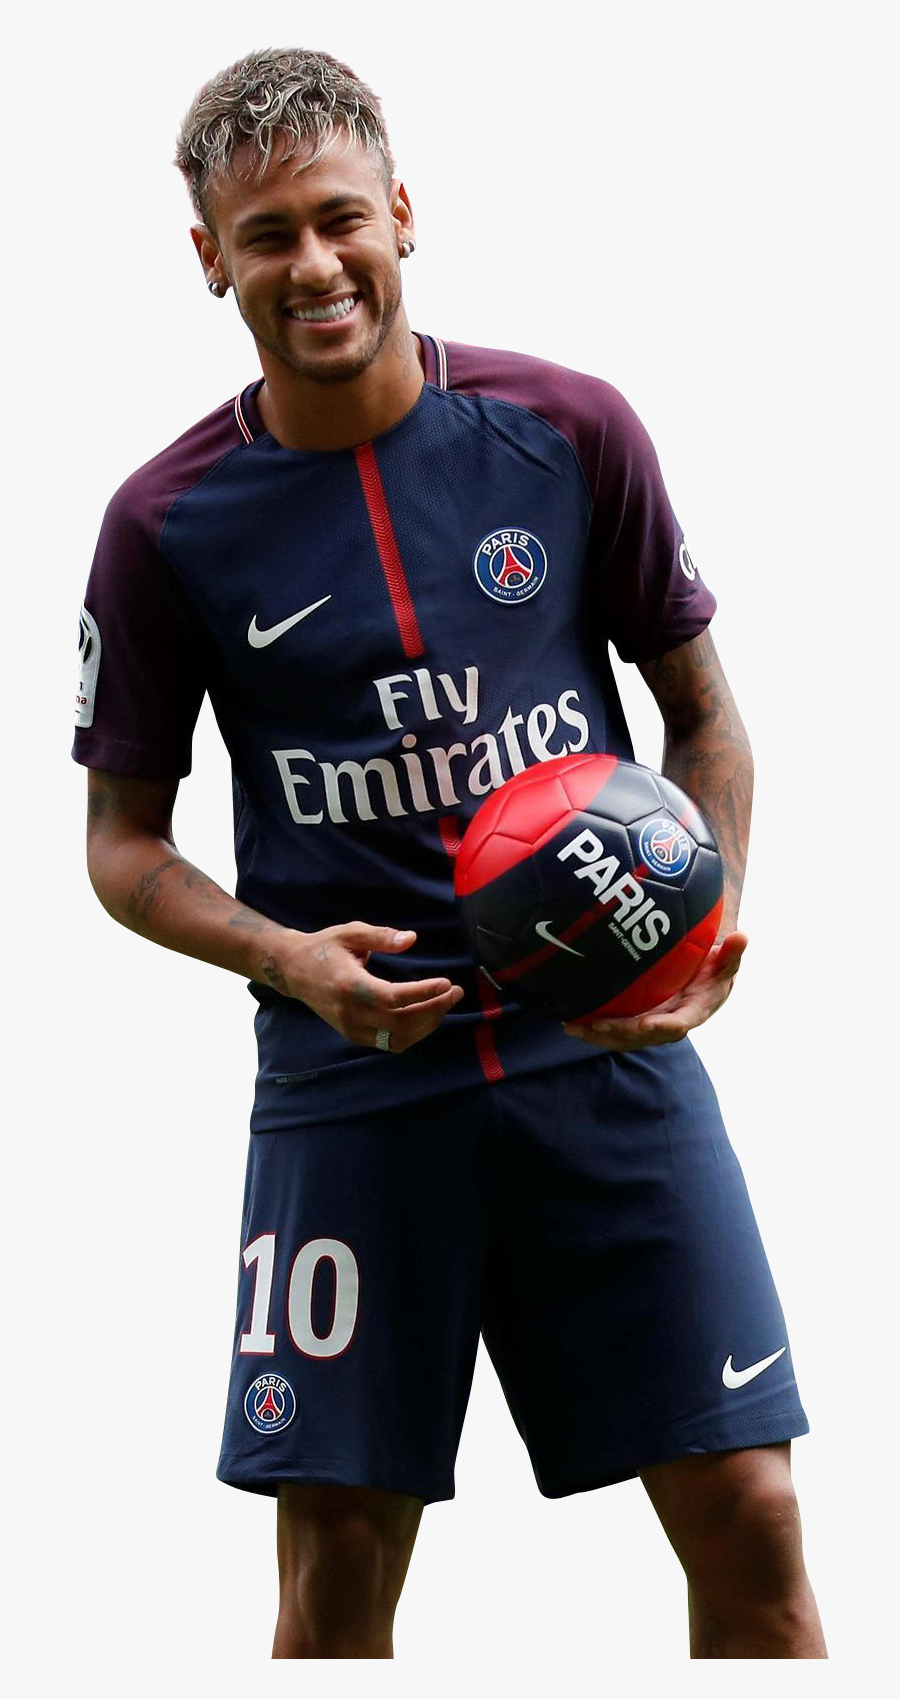 Neymar Psg 2017 Happy Clipart Image - Paris Saint Germain Neymar Png, Transparent Clipart